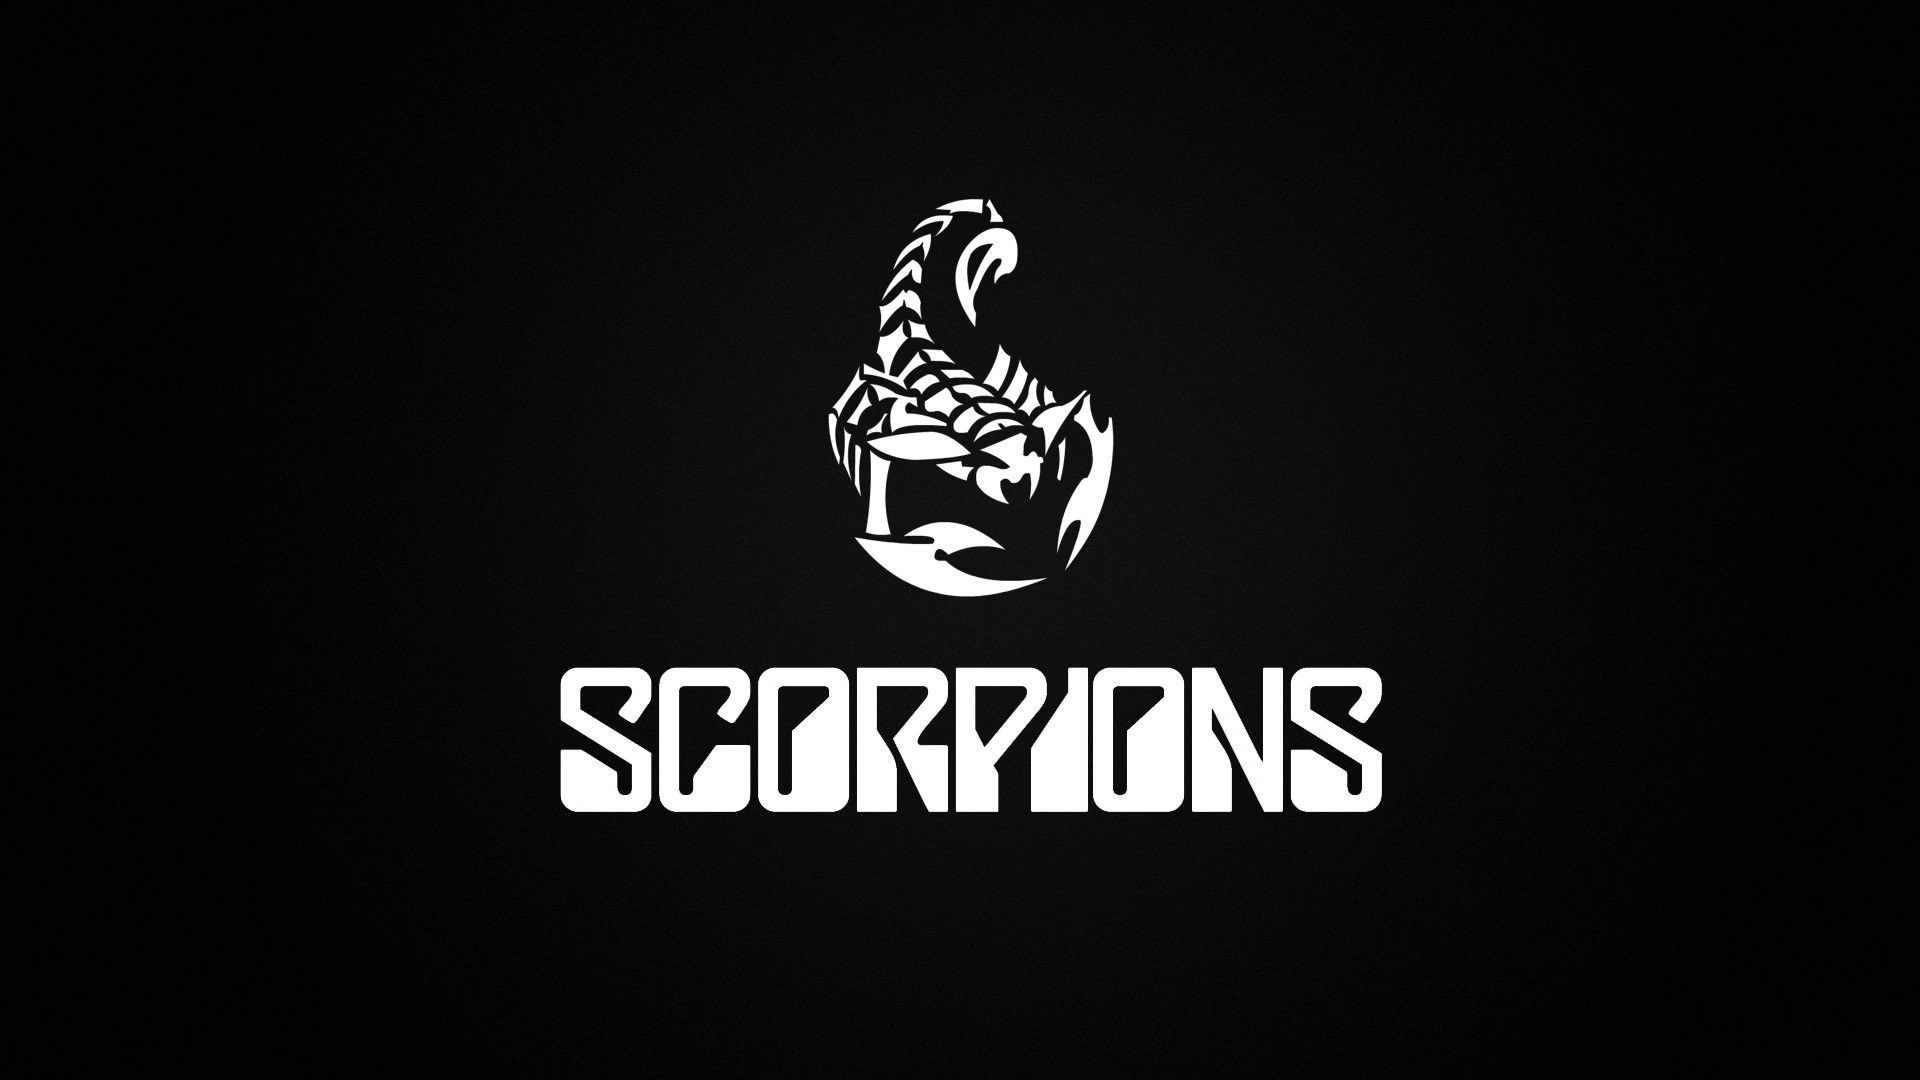 Wallpapers Scorpions - KibrisPDR